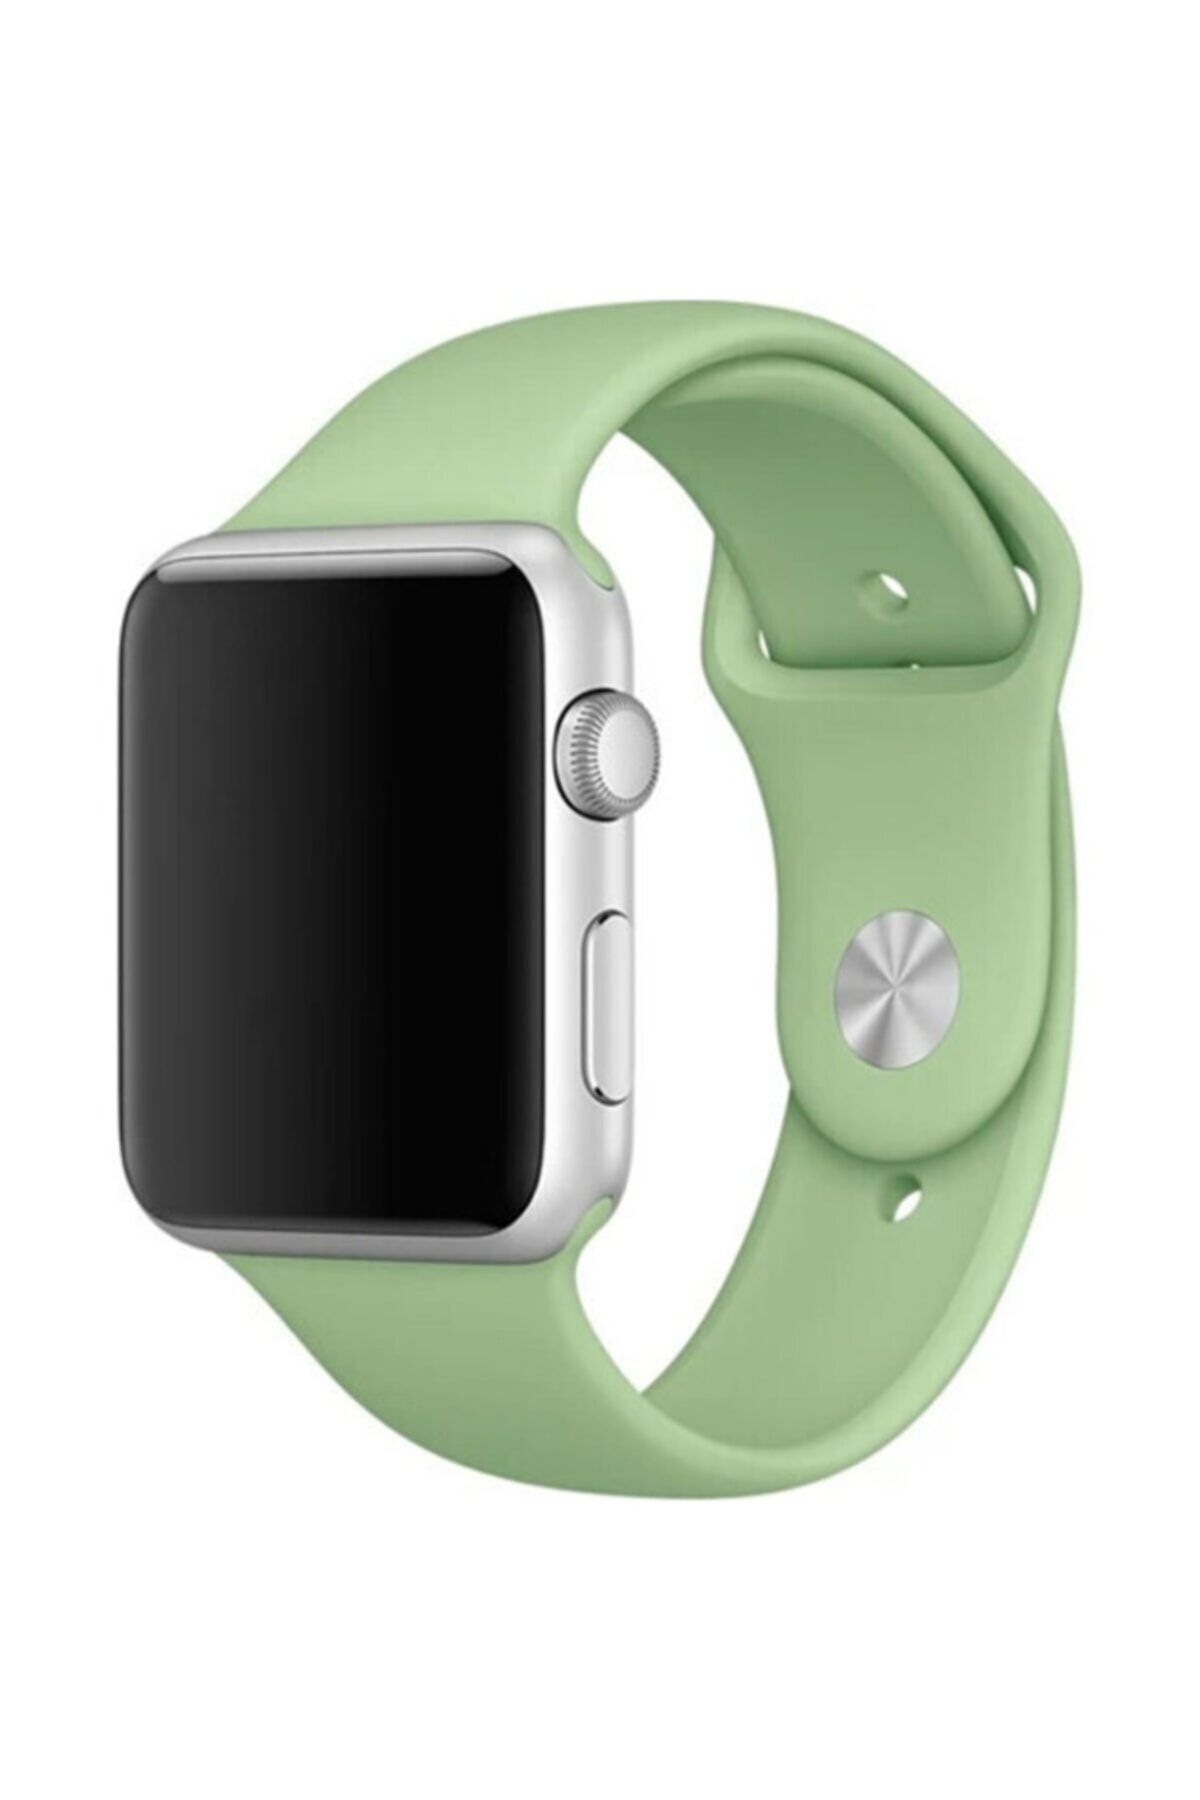 Bilişim Aksesuar Apple Watch 38 - 40-41 Mm Spor Kordon Silikon Kayış Fıstık Yeşil S / M Beden